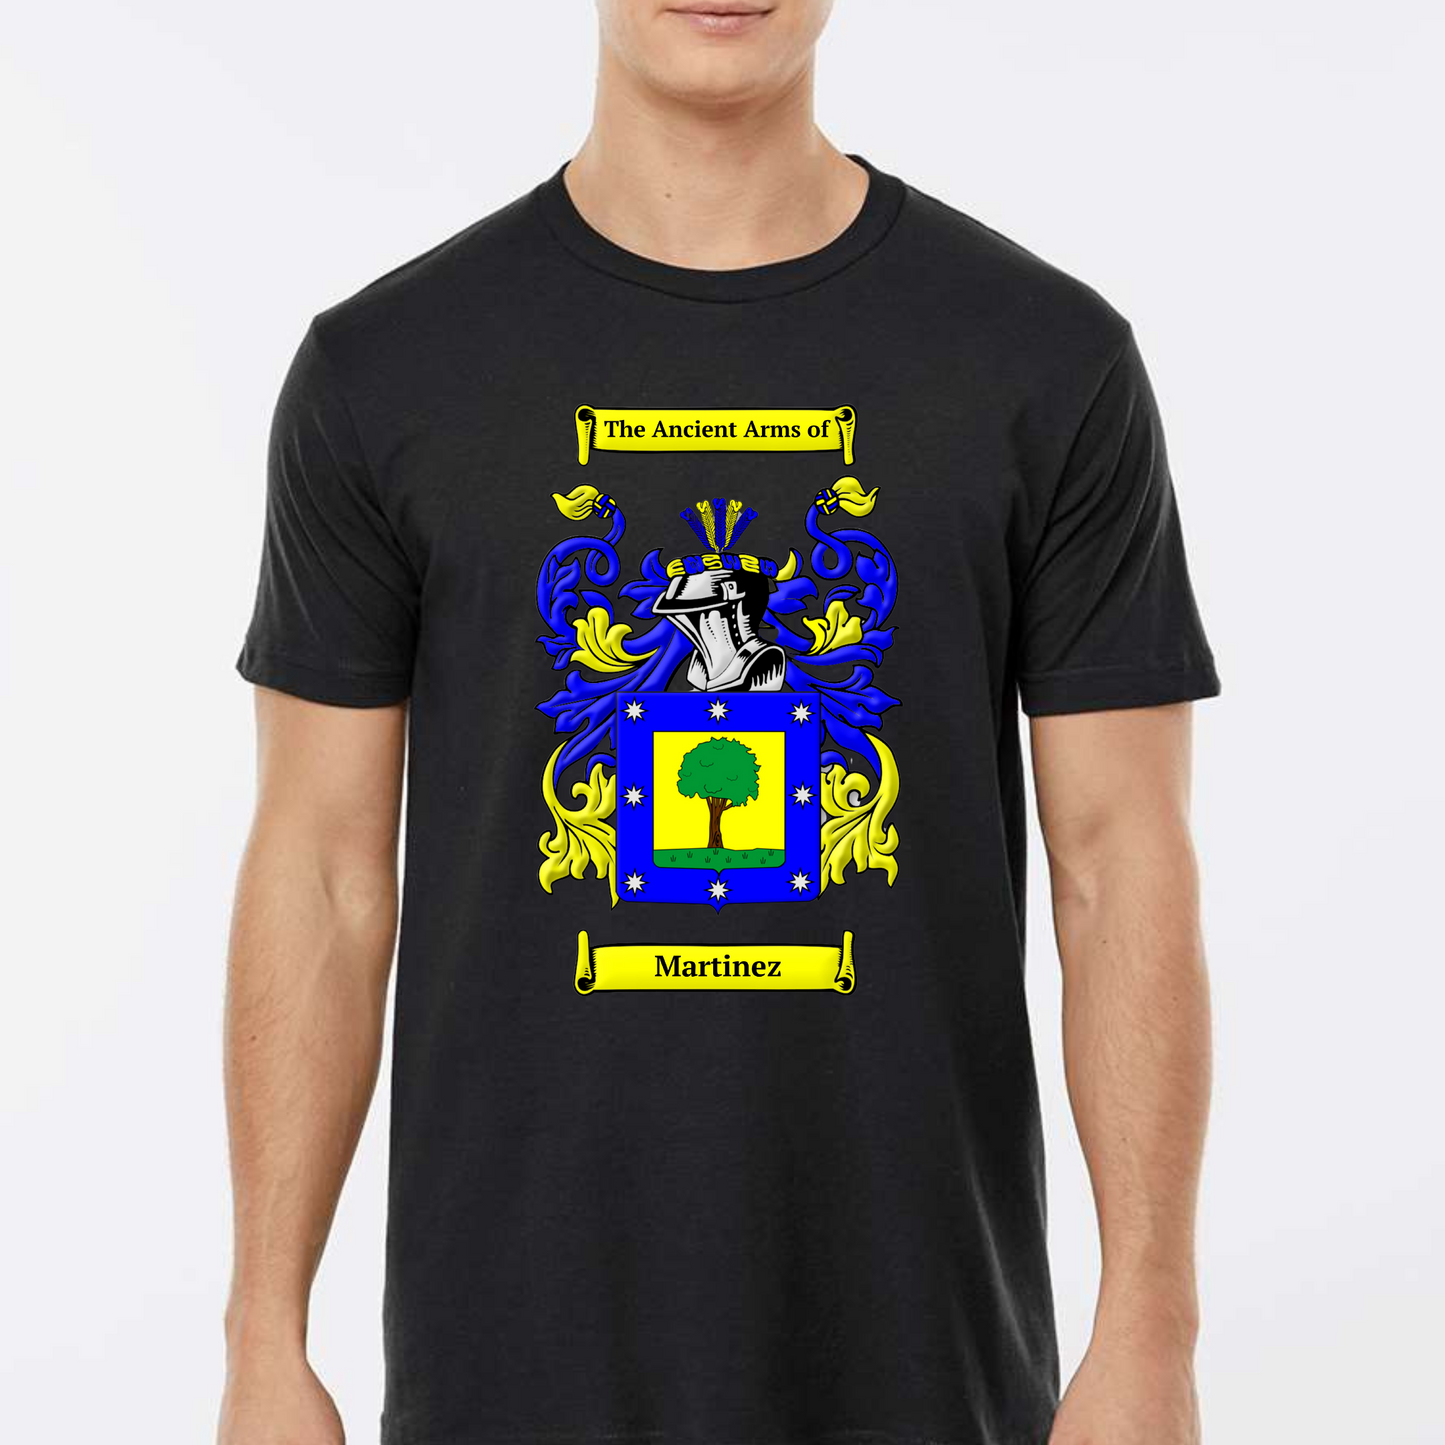 Martinez reunion coat of arms t-shirt